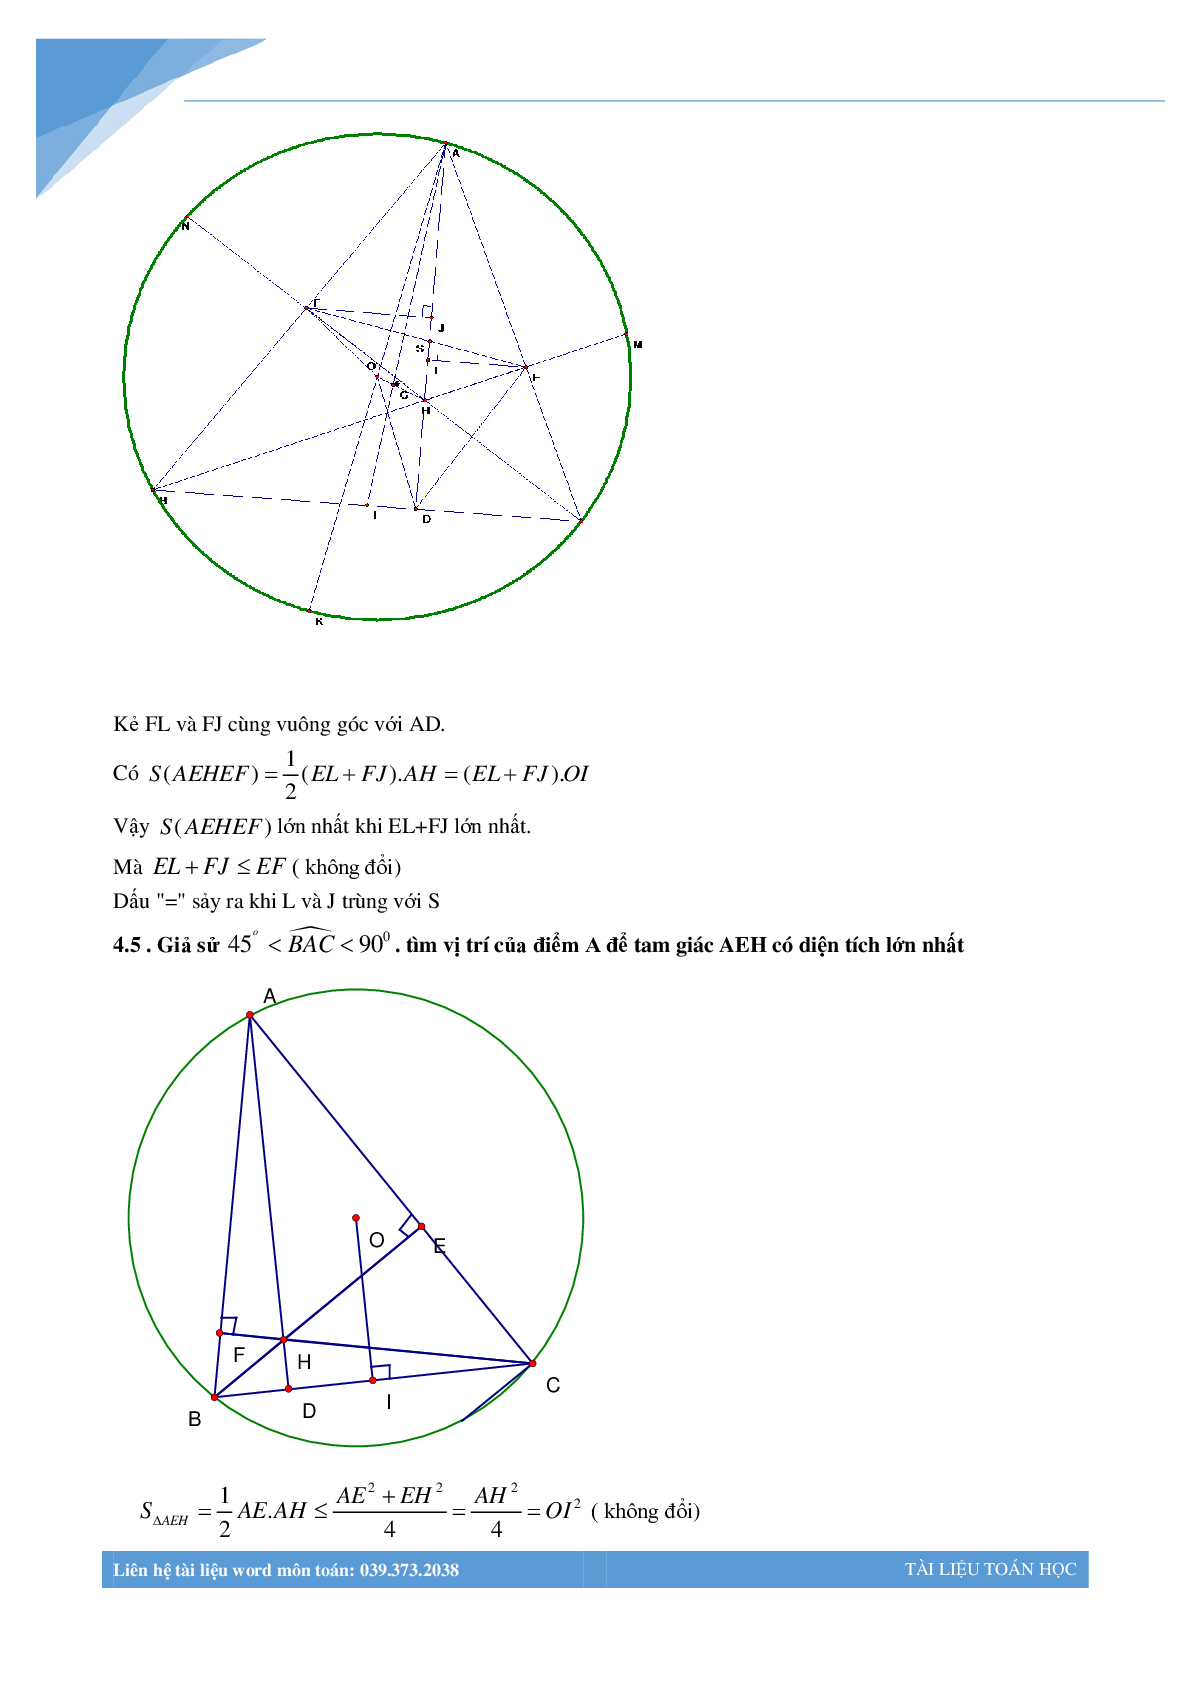 Chùm bài toán hình học luyện thi vào lớp 10 (trang 9)